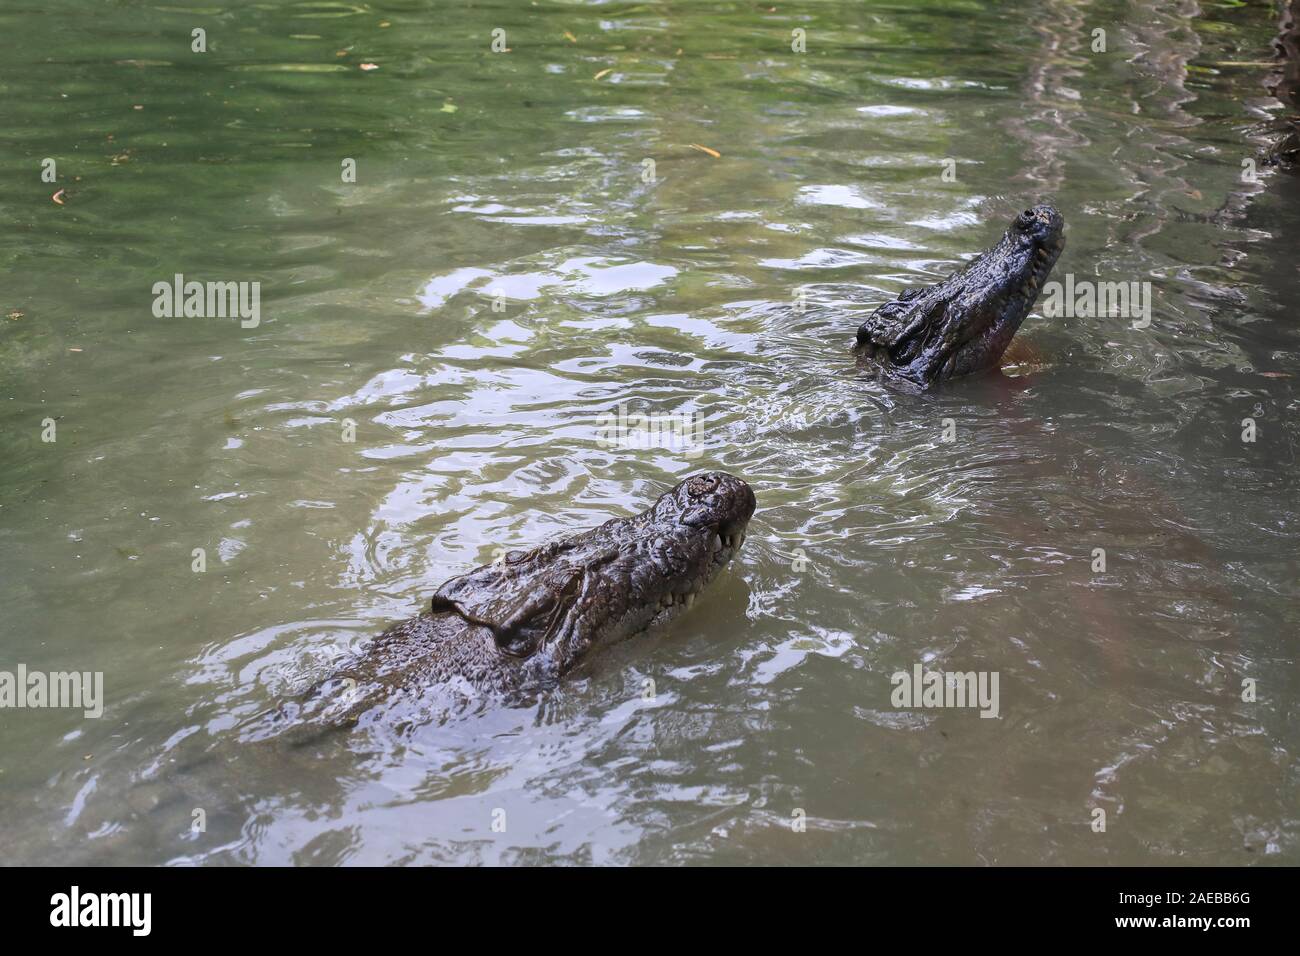 Los cocodrilos de agua salada (Crocodylus porosus) en busca de alimentos Foto de stock